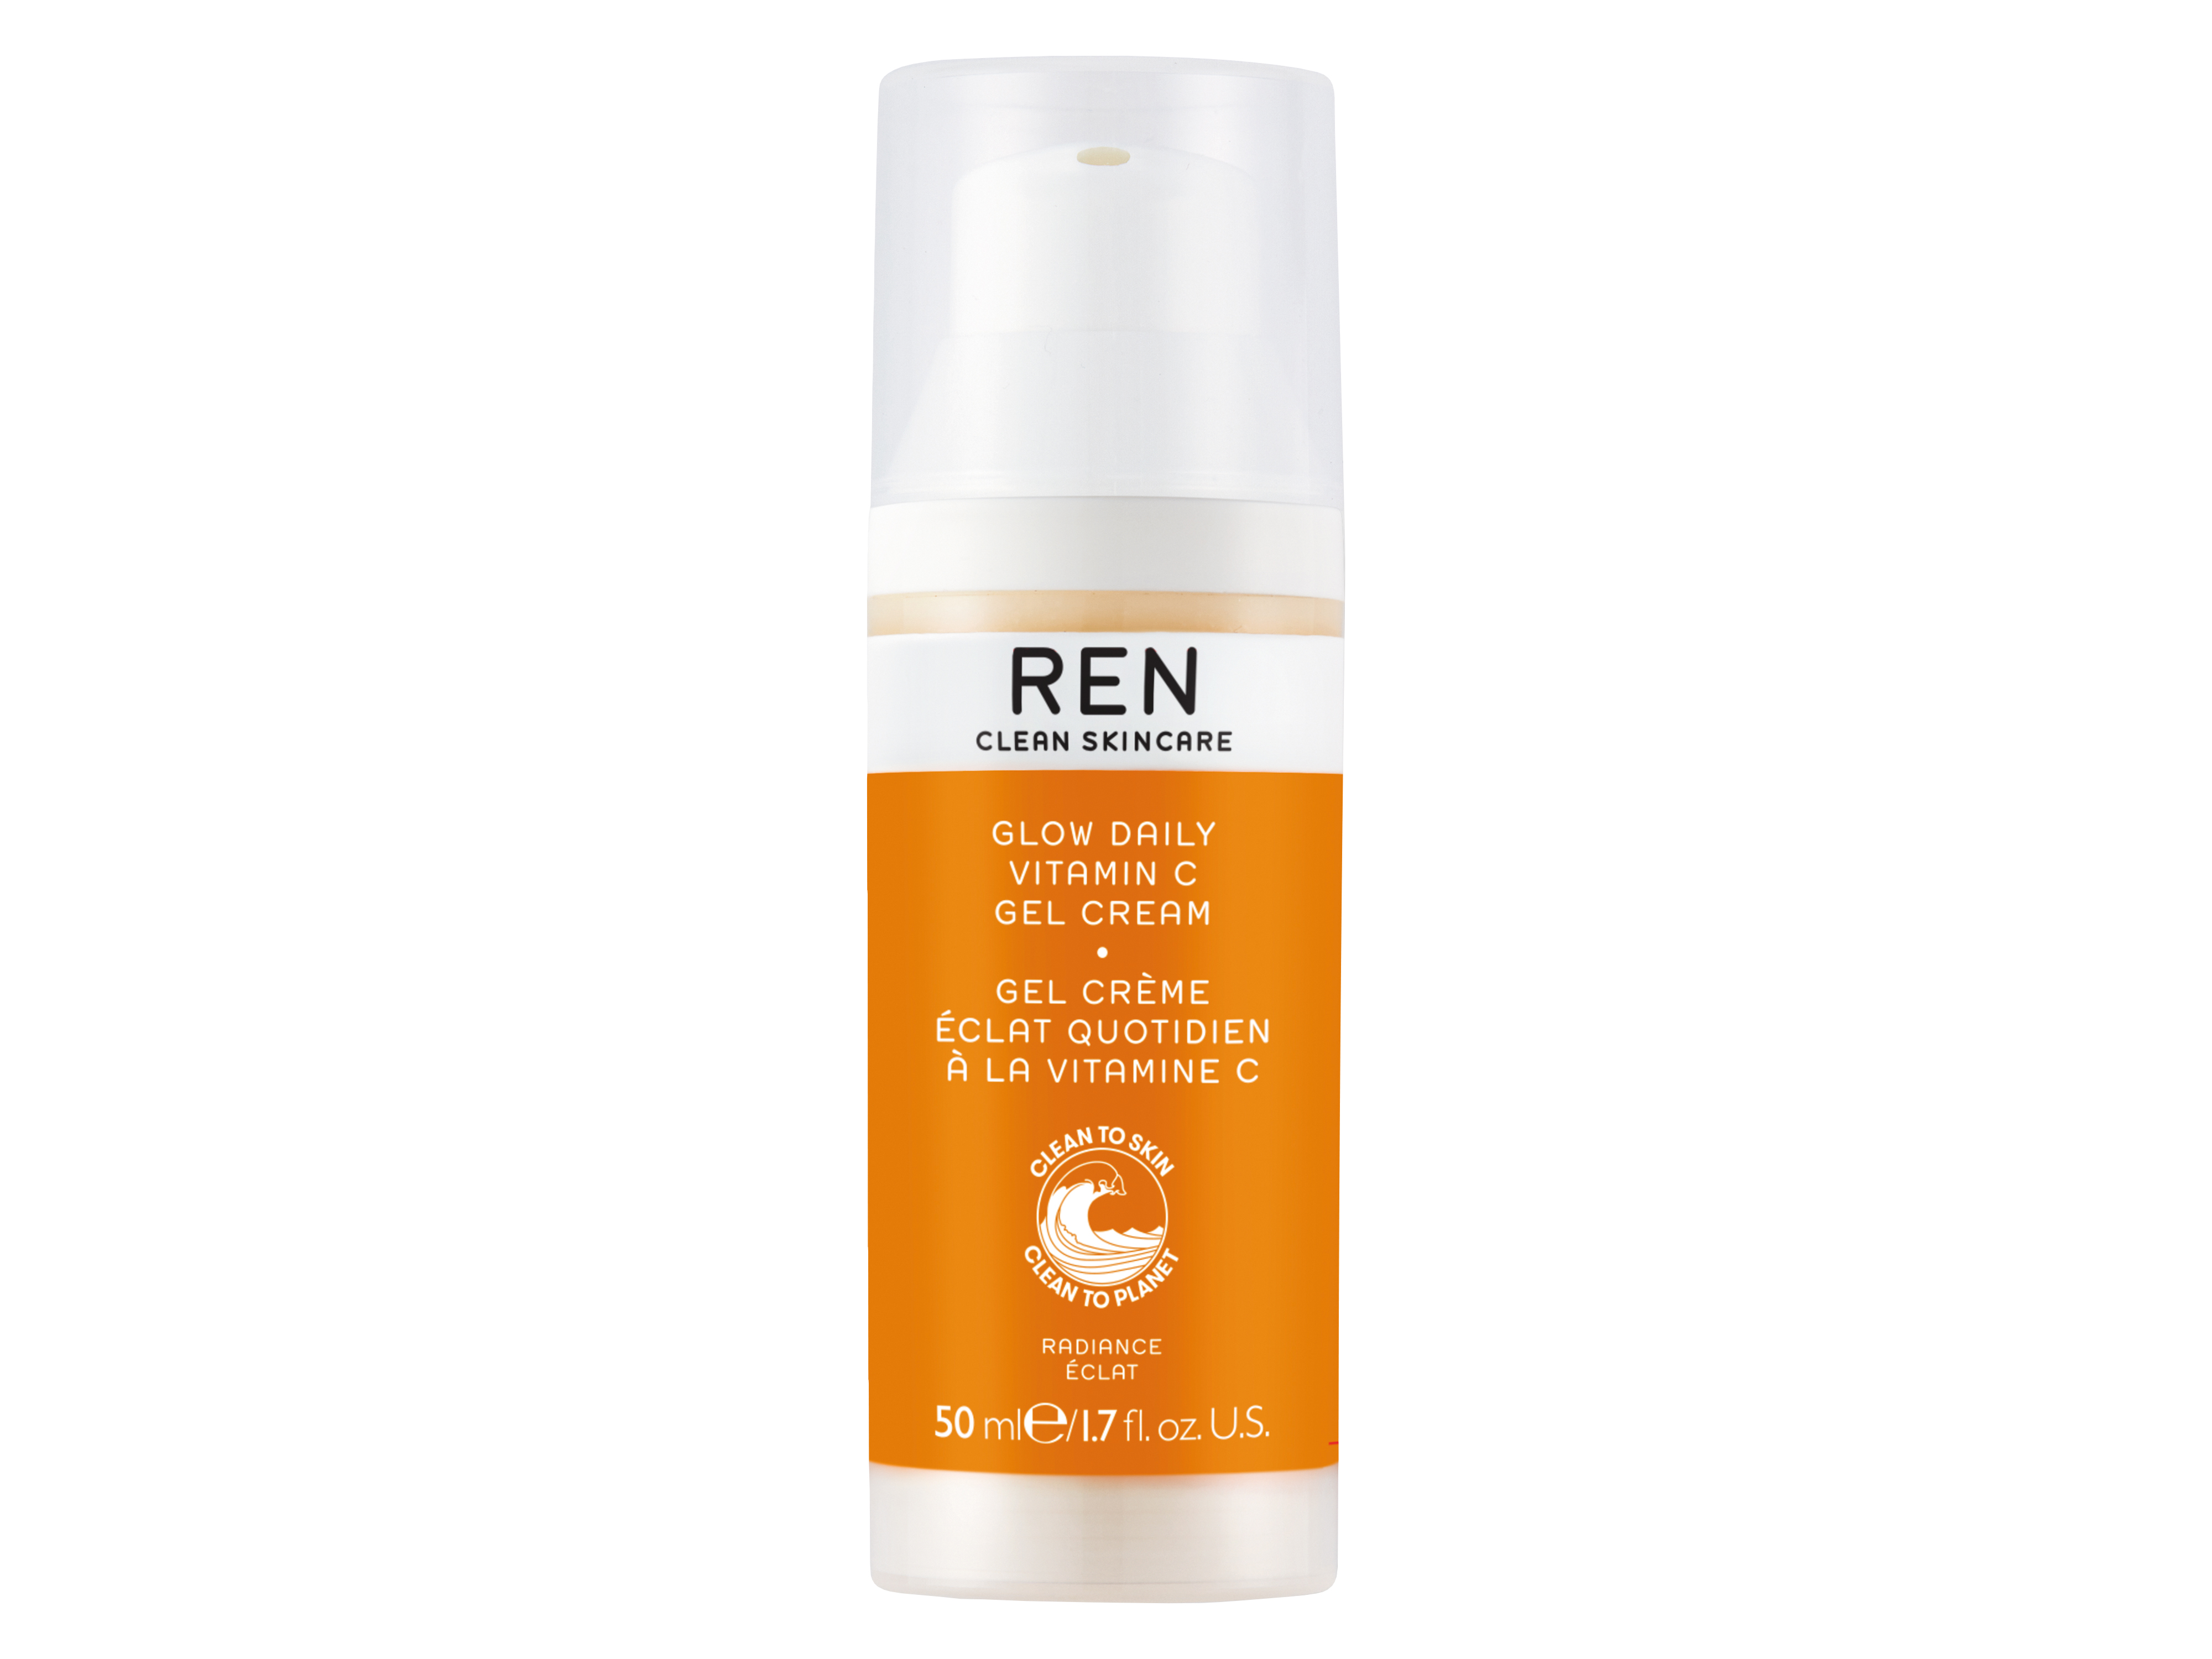 REN Radiance Glow Daily Vitamin C Gel Cream, 50 ml